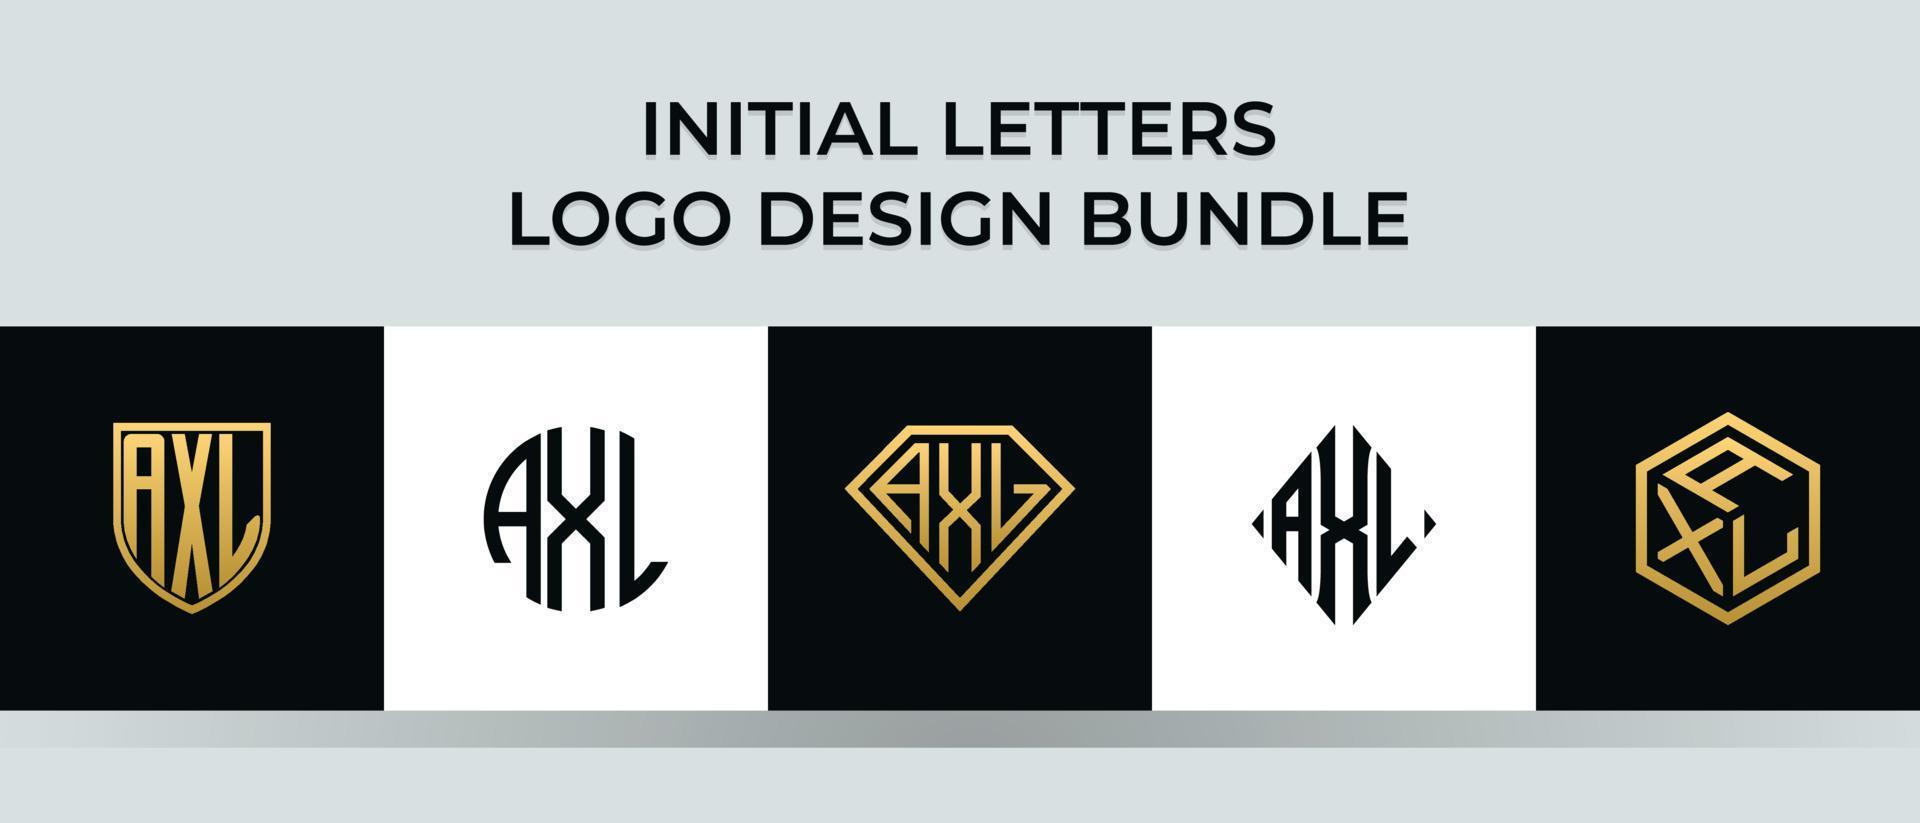 lettere iniziali axl logo design bundle vettore